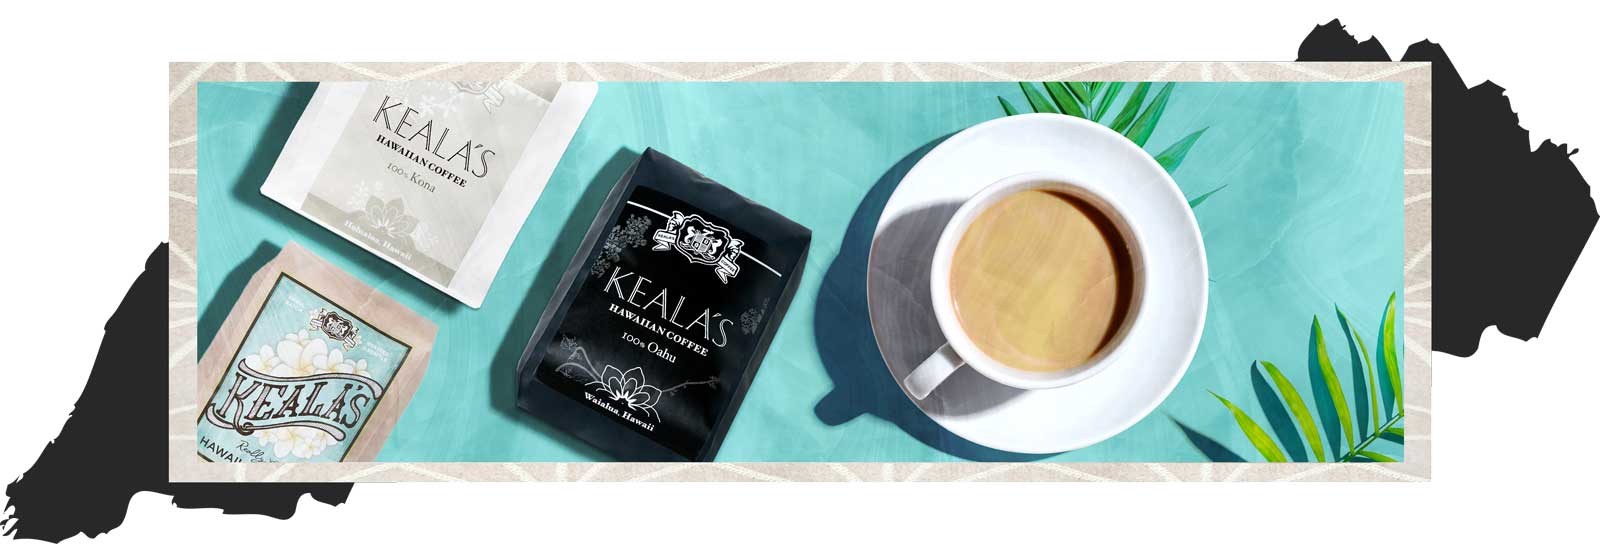 Keala's Authentic Hawaiian Kona Coffee